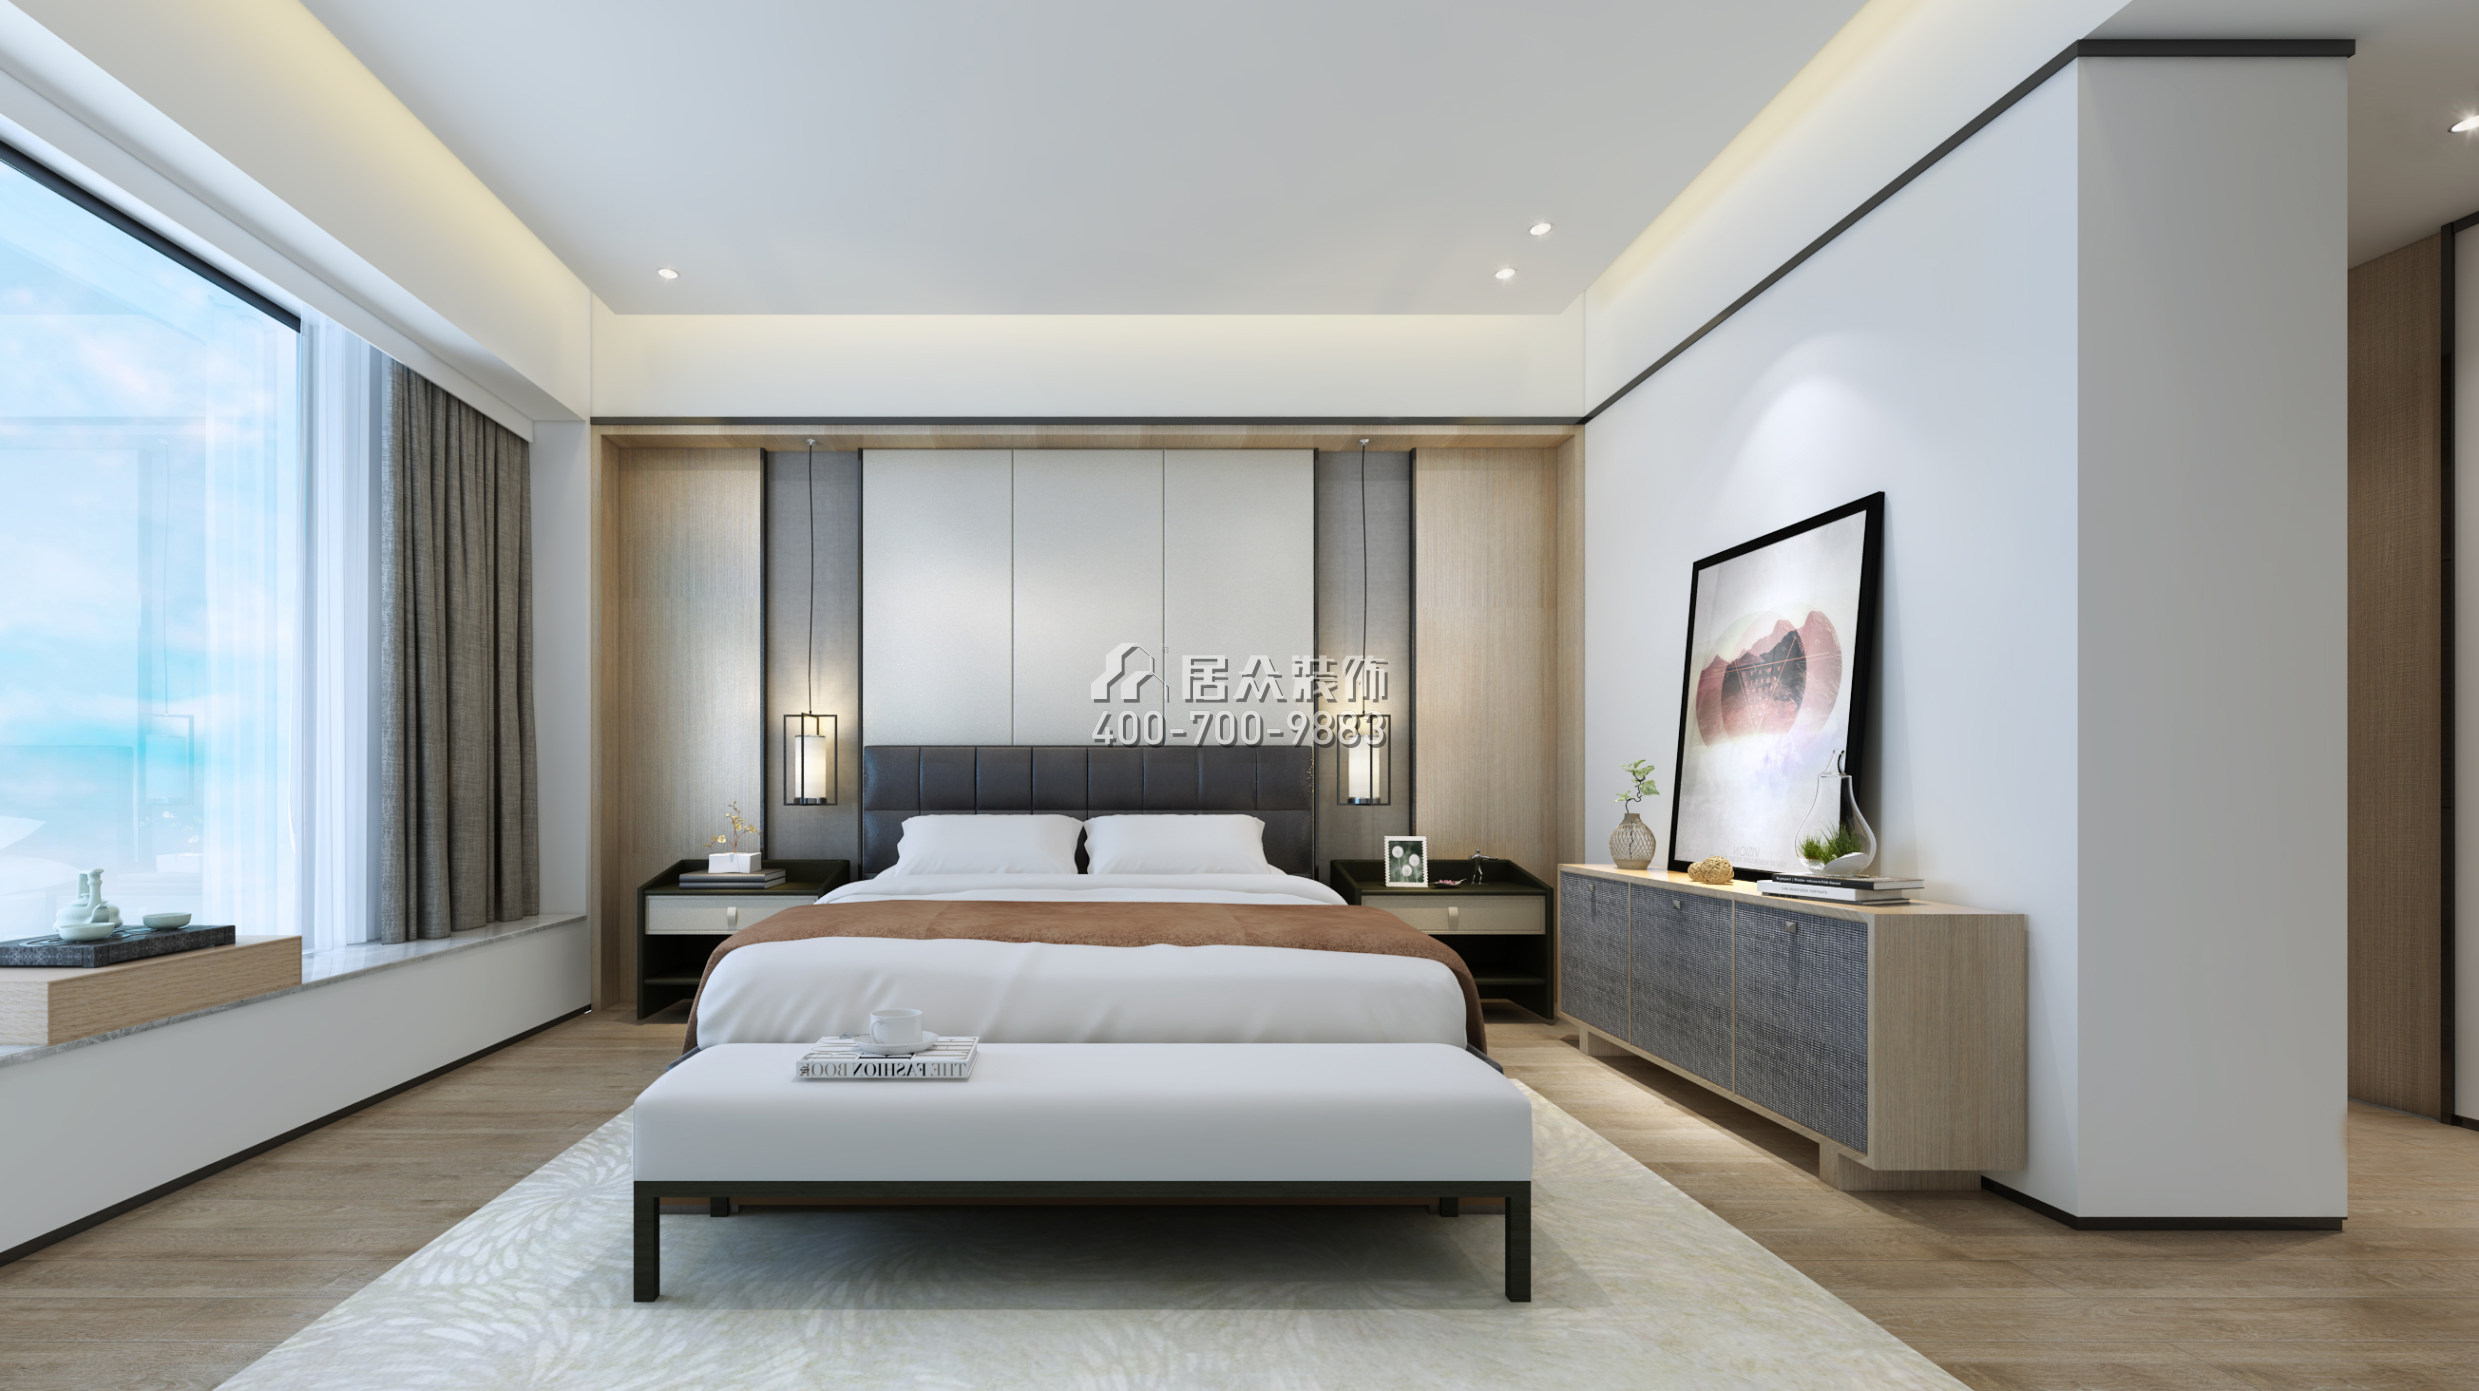 吉祥龙花园222平方米现代简约风格平层户型卧室装修效果图